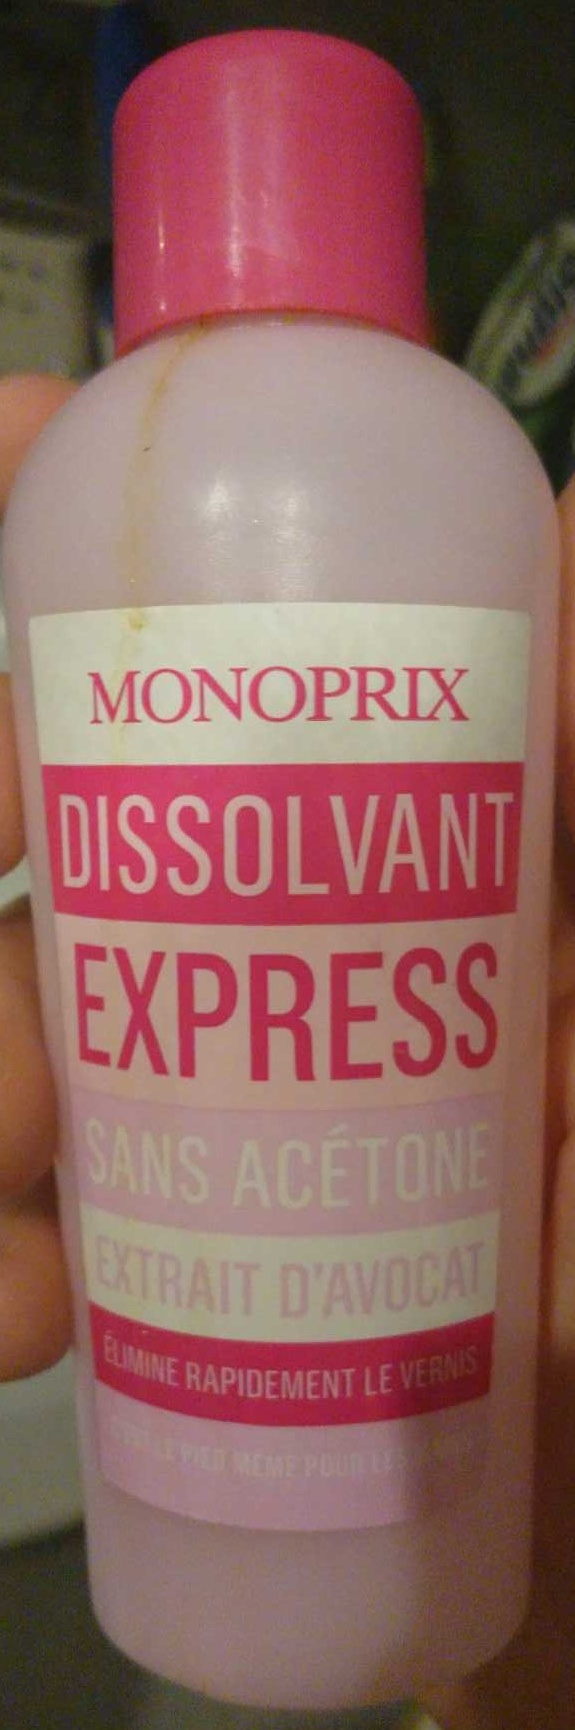 Dissolvant express sans acétone - Produto - fr